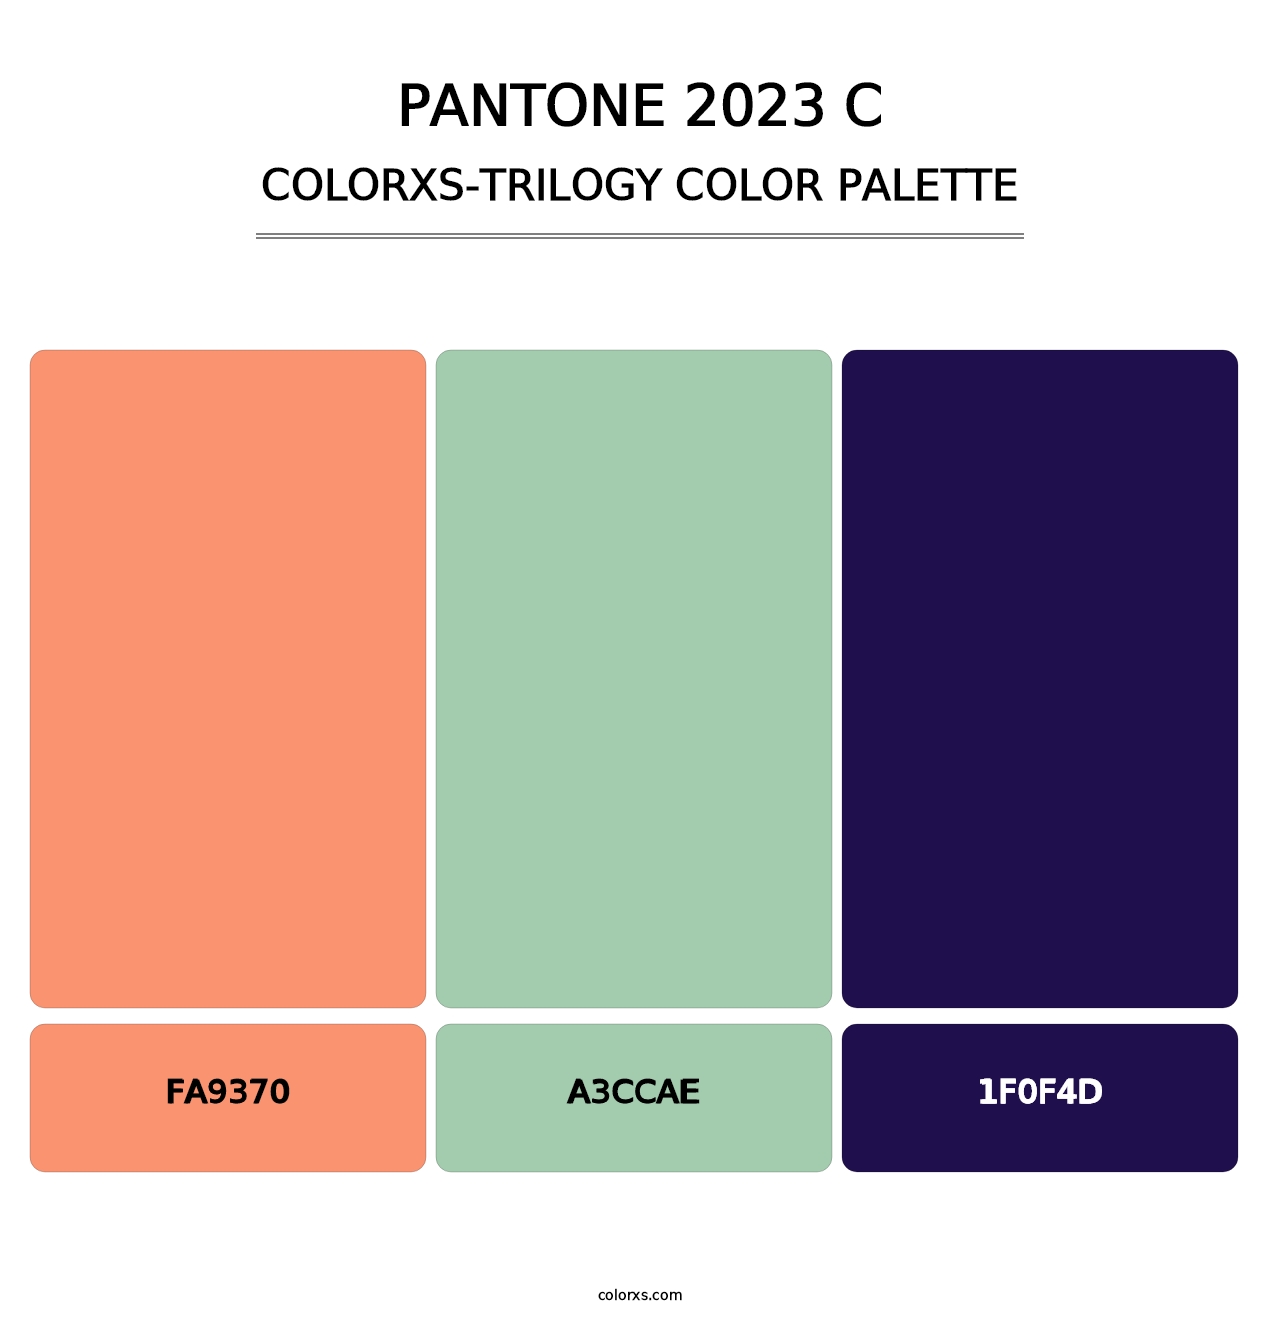 PANTONE 2023 C - Colorxs Trilogy Palette